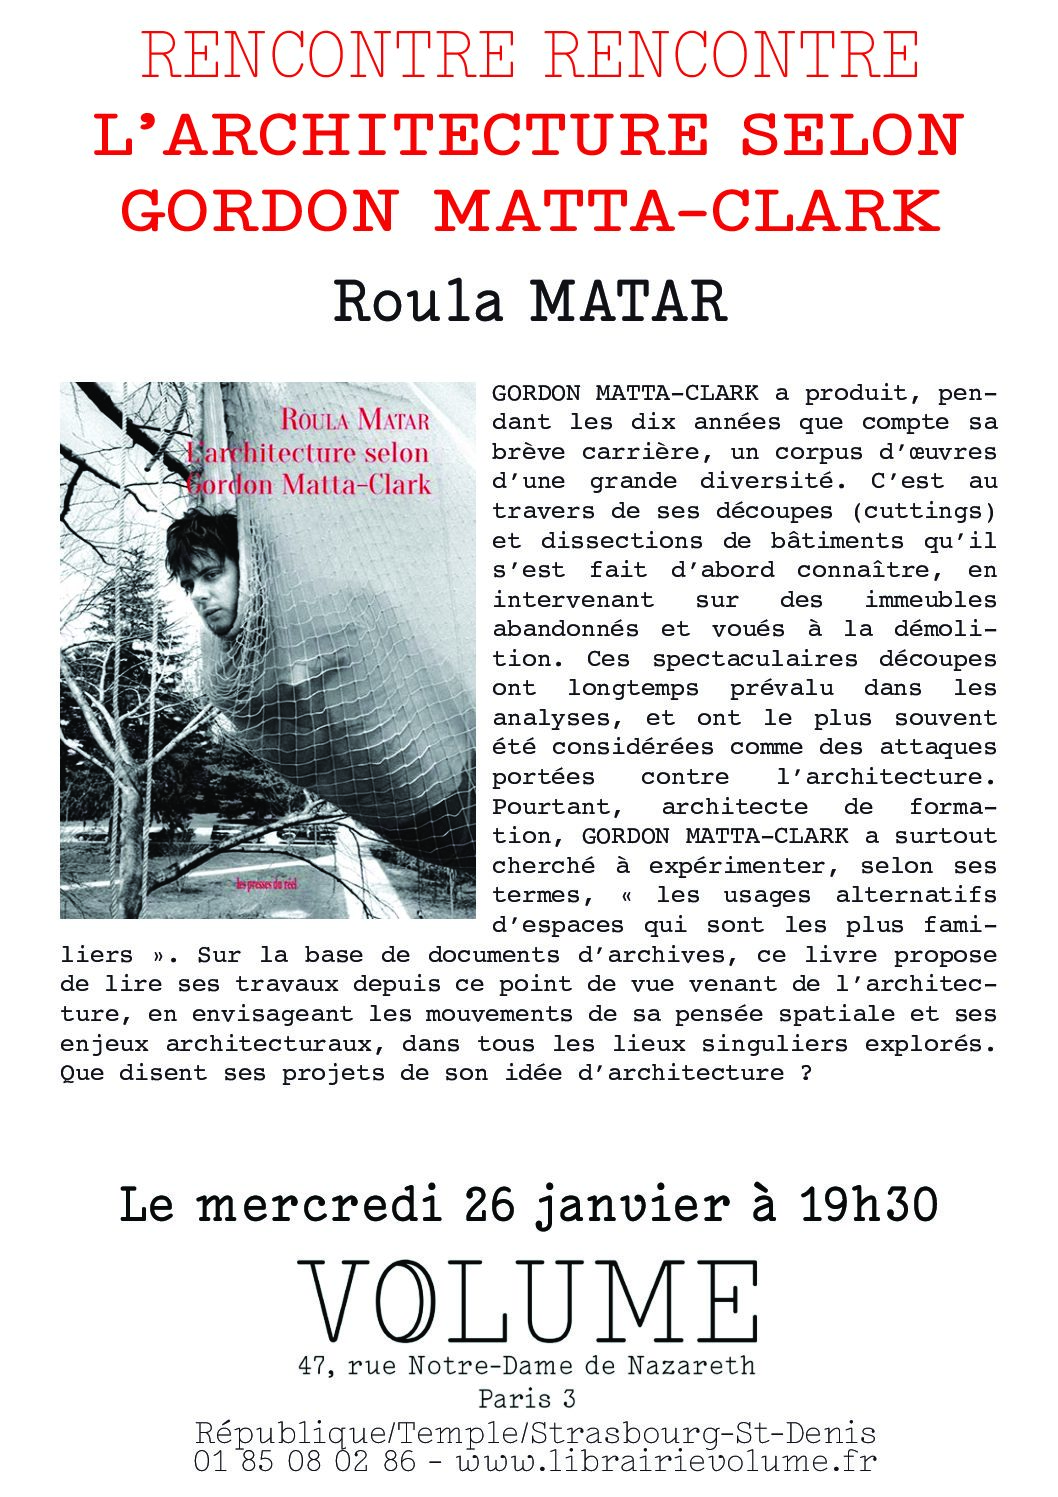 Parution: Roula Matar, L’architecture selon Gordon Matta-Clark, Les presses du réel